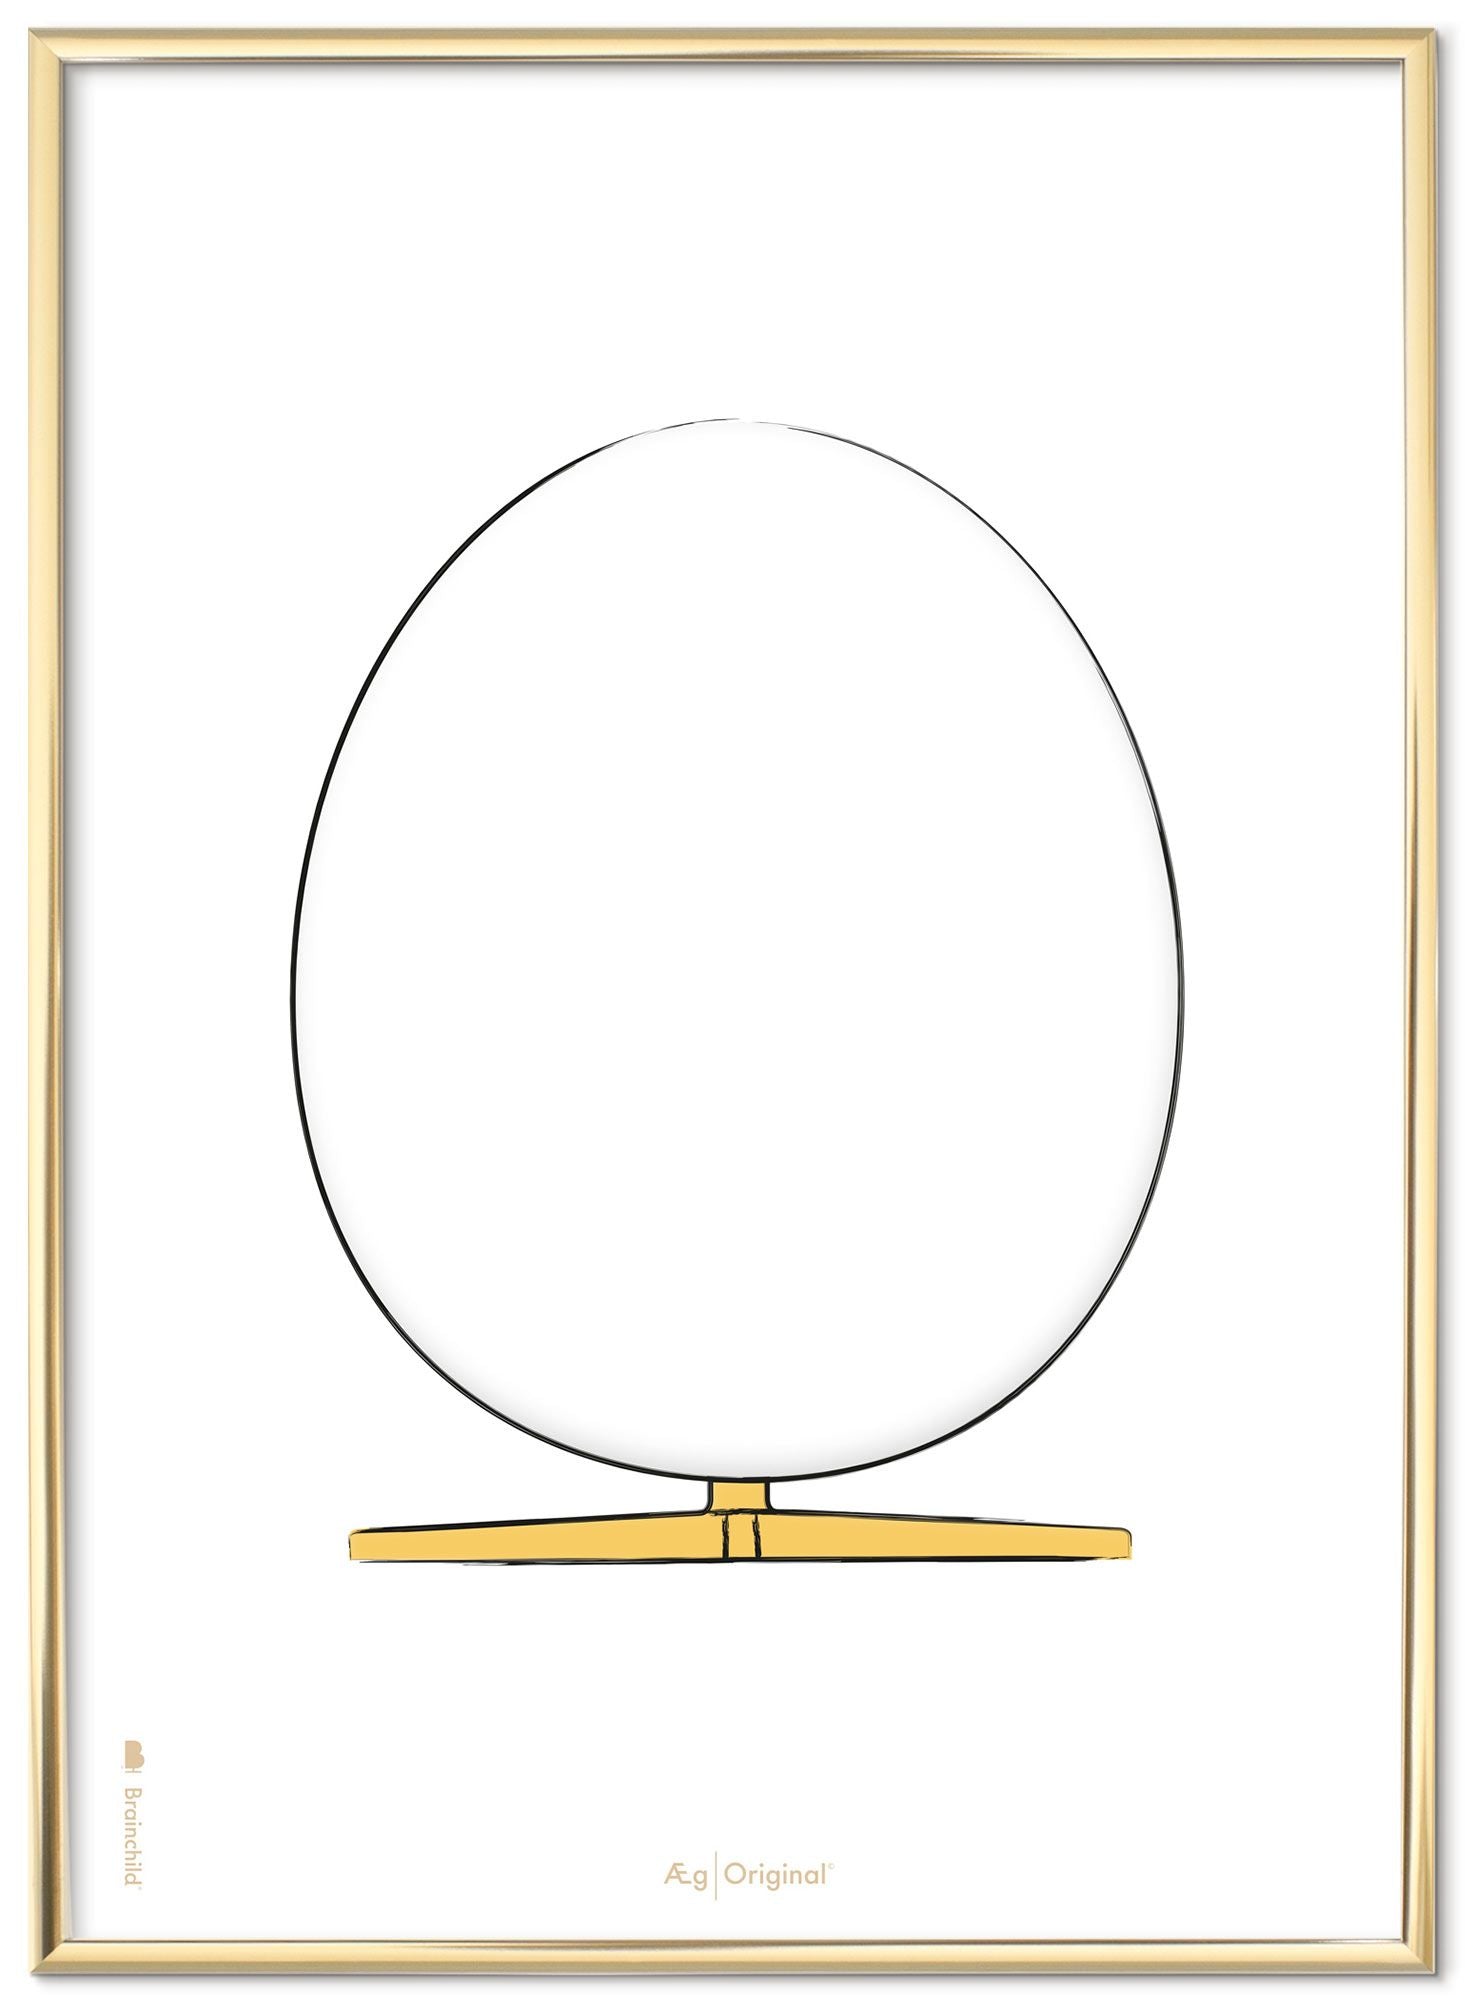 Brainchild äggdesignskissaffischen med ram gjord av mässingsfärgad metall A5, vit bakgrund